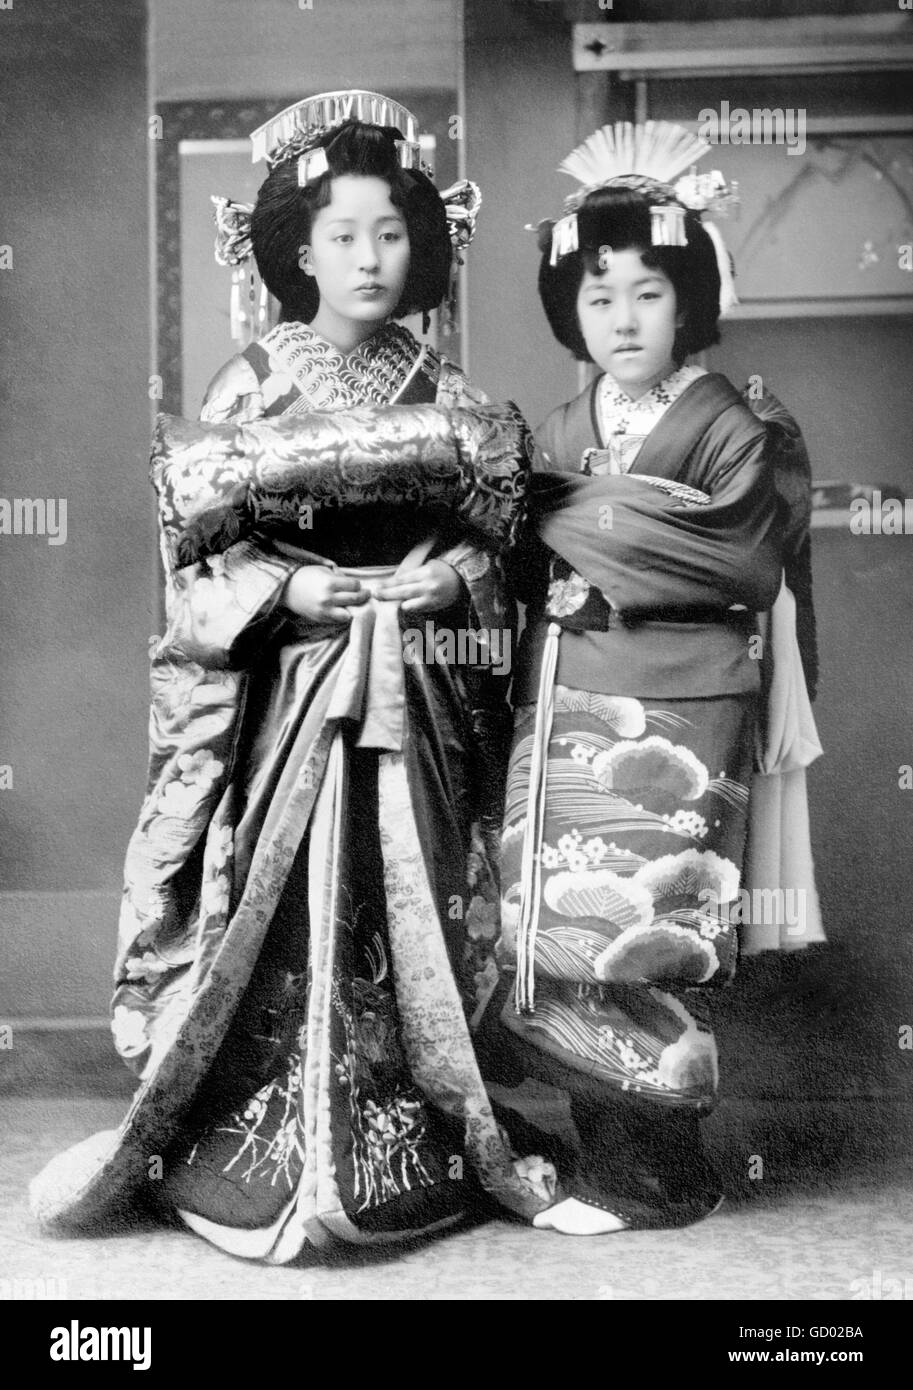 Geisha, Japon. Geishas japonaises traditionnelles. Photo de Bain News Service, c.1915-1920 Banque D'Images